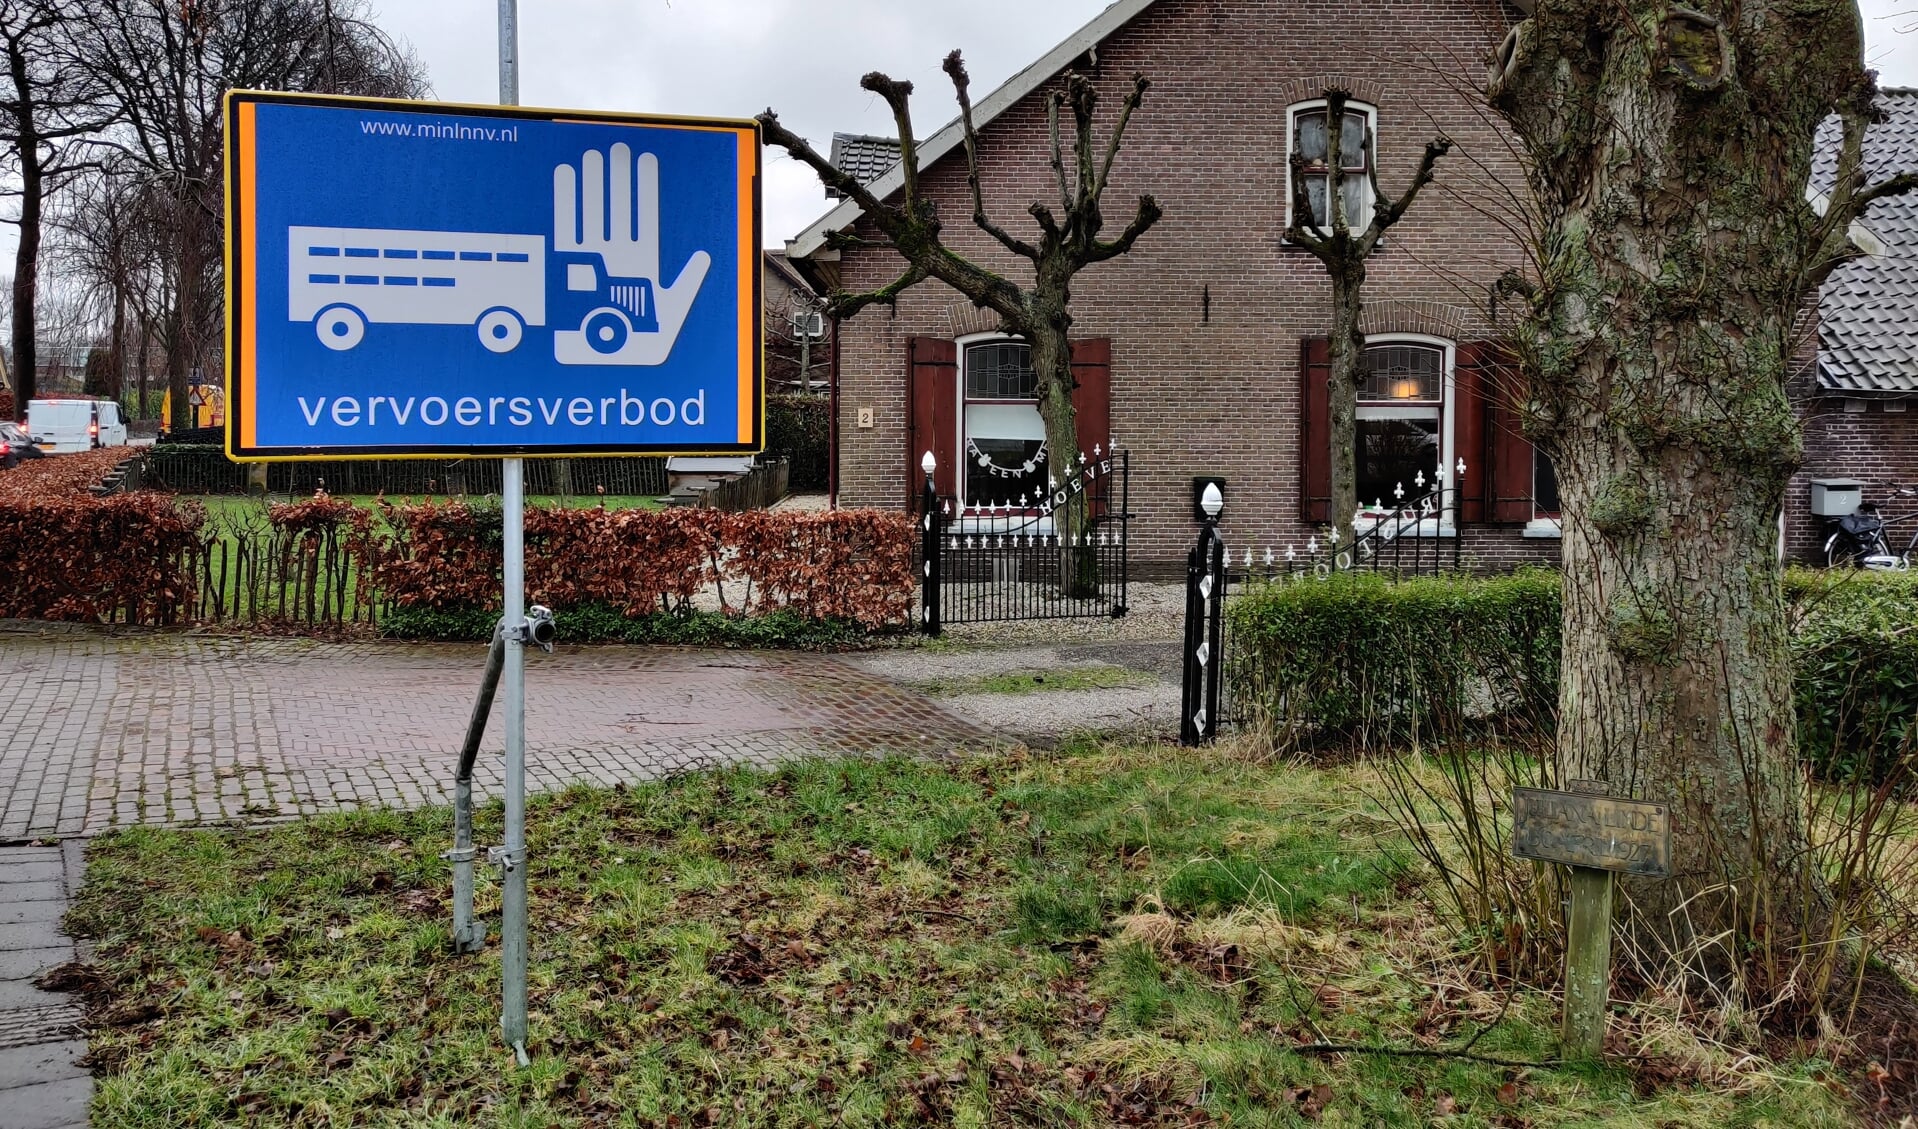 Recente uitbraken van vogelgriep in Hierden en Zeewolde leidden tot een vervoersverbod in De Bilt. foto Henk van de Bunt]